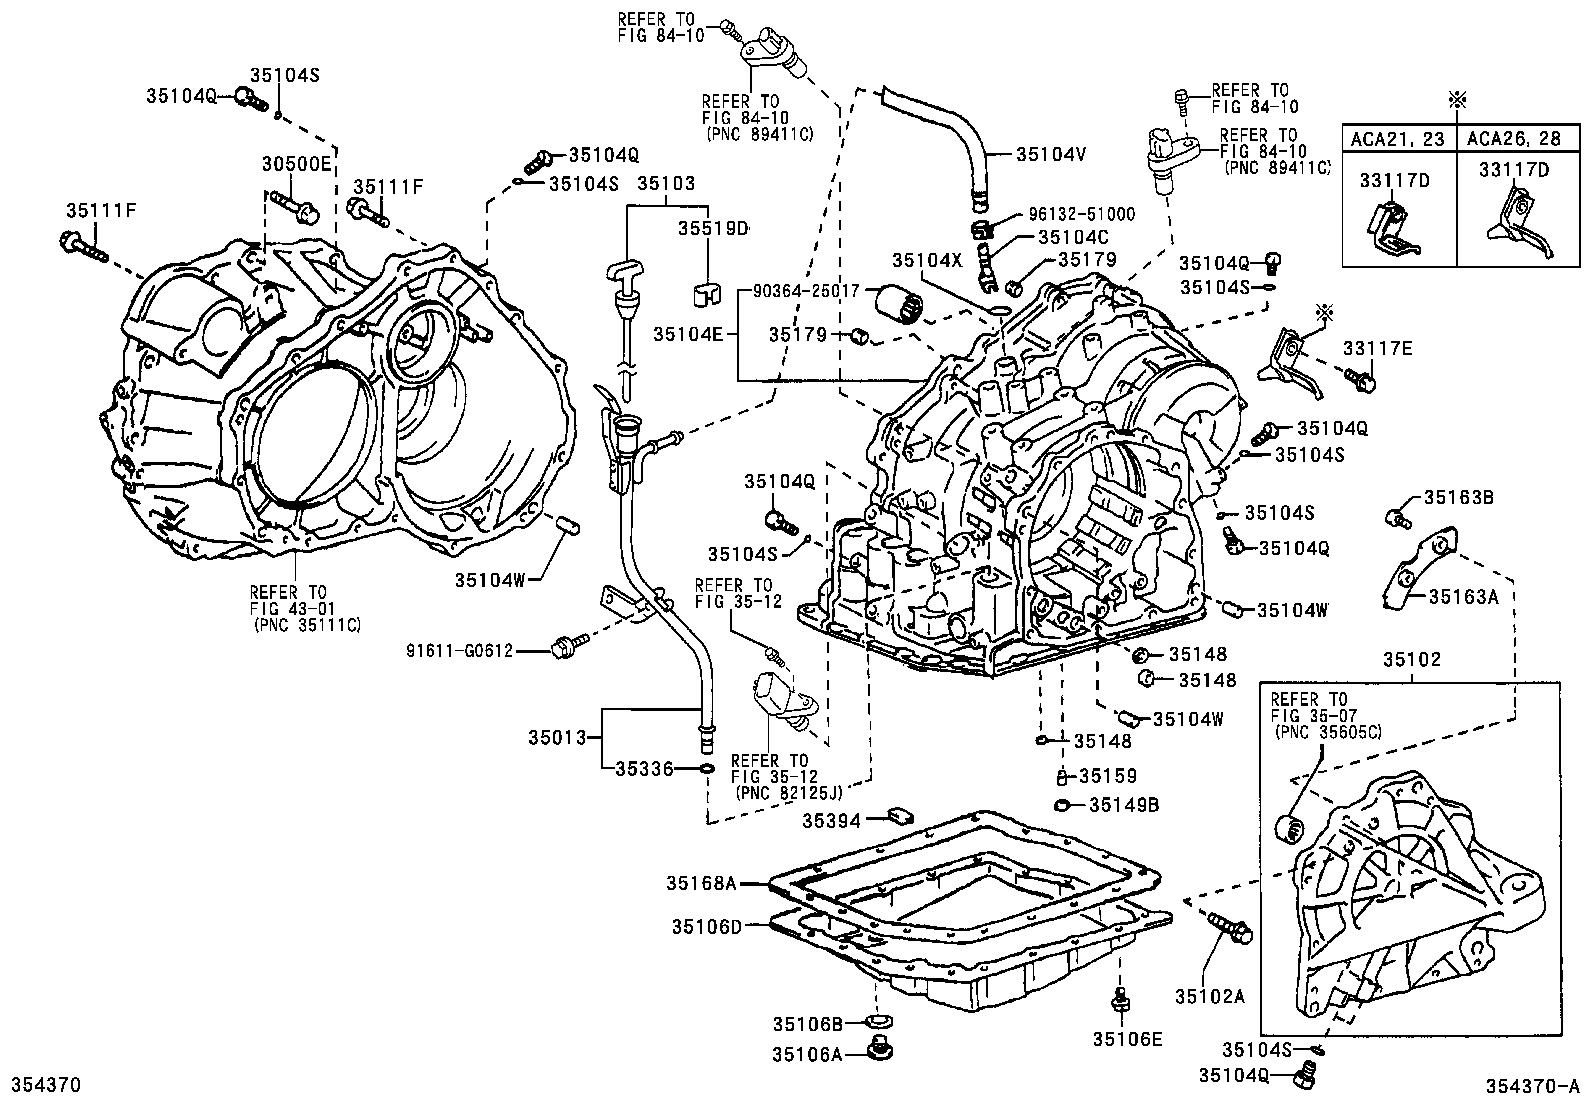 2003 Rav4 Wiring Diagram - Cars Wiring Diagram